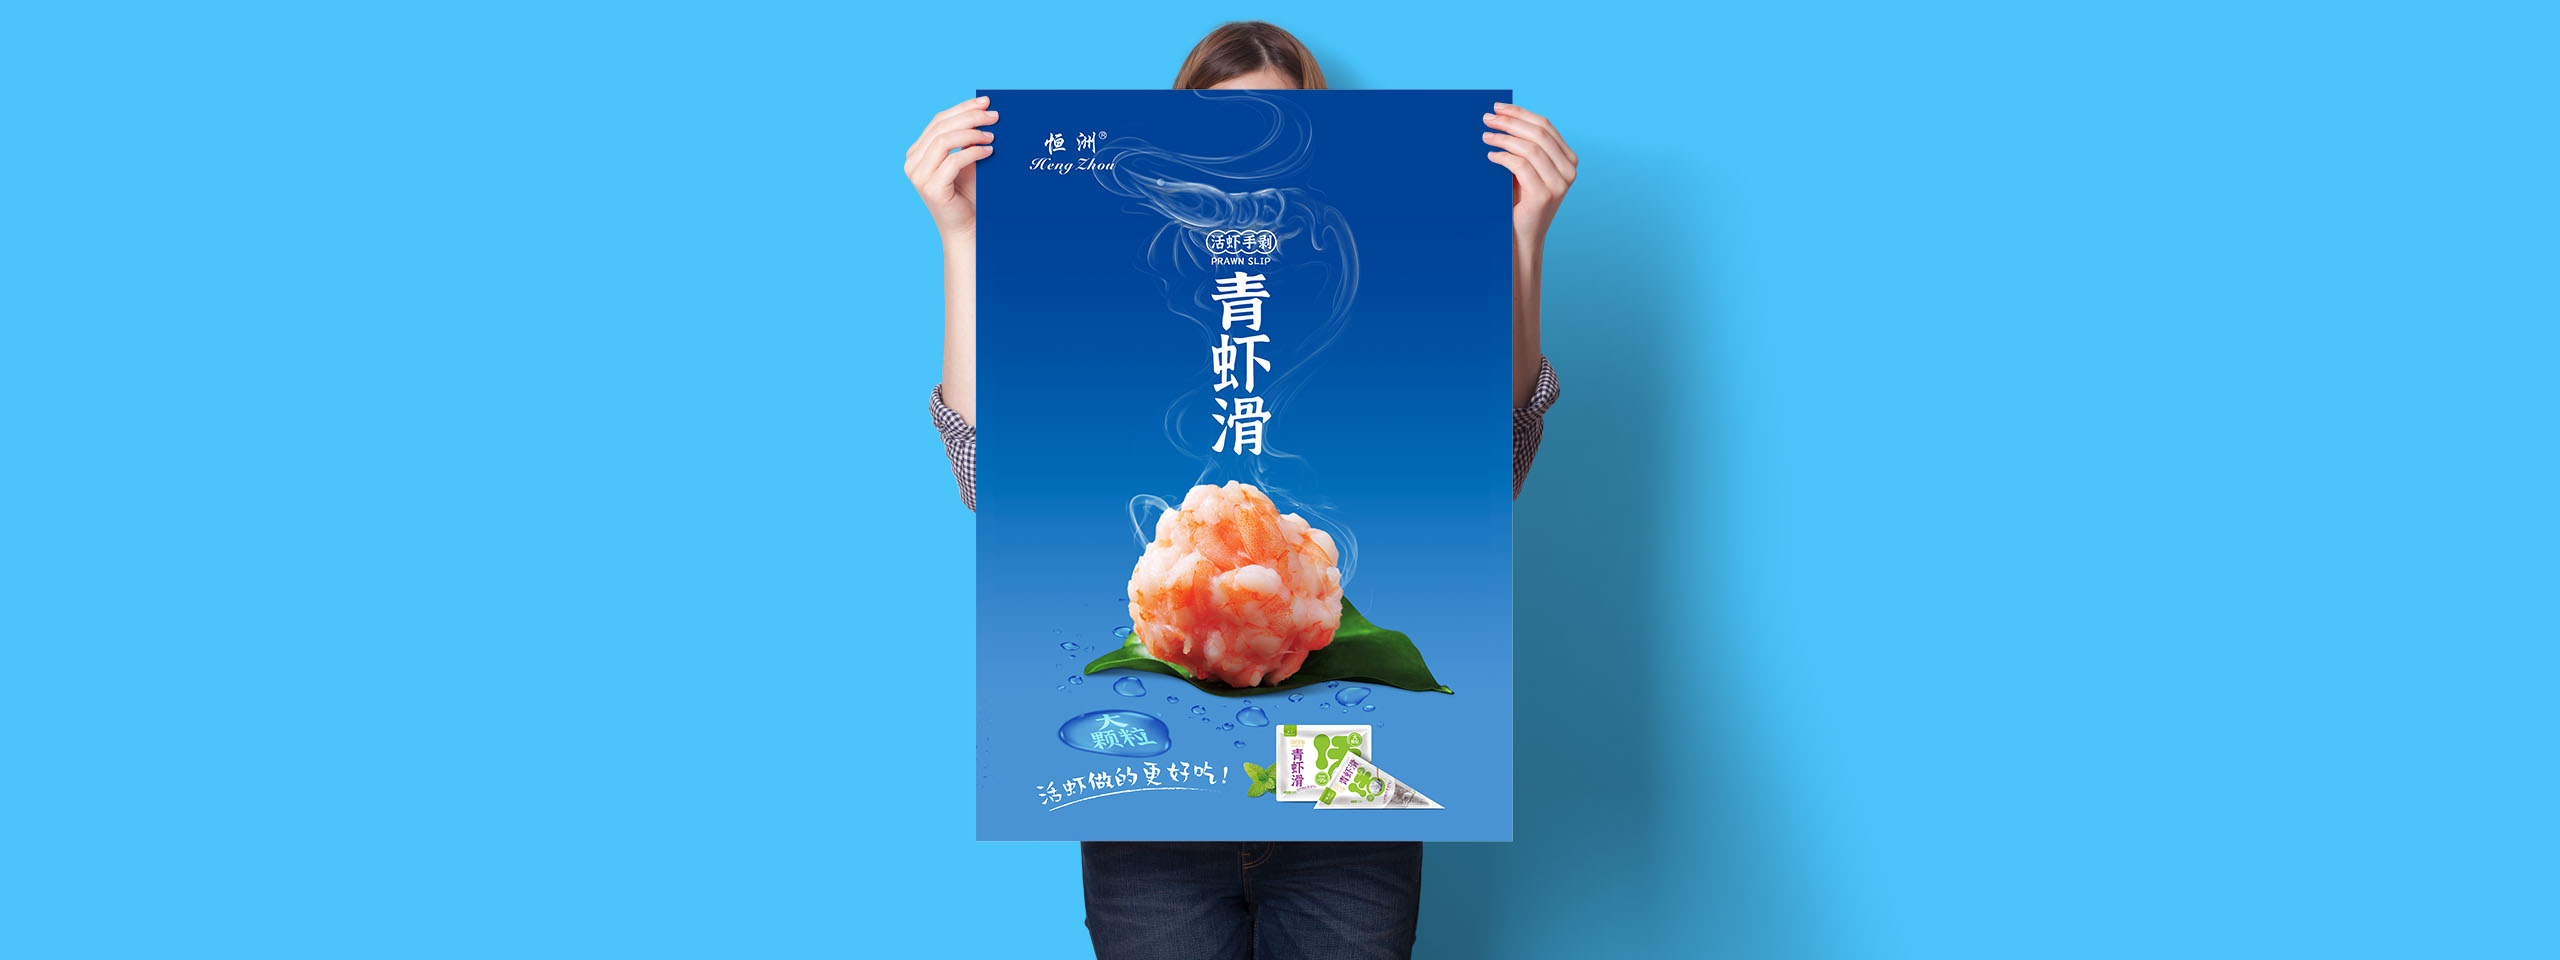 虾滑广告宣传语图片